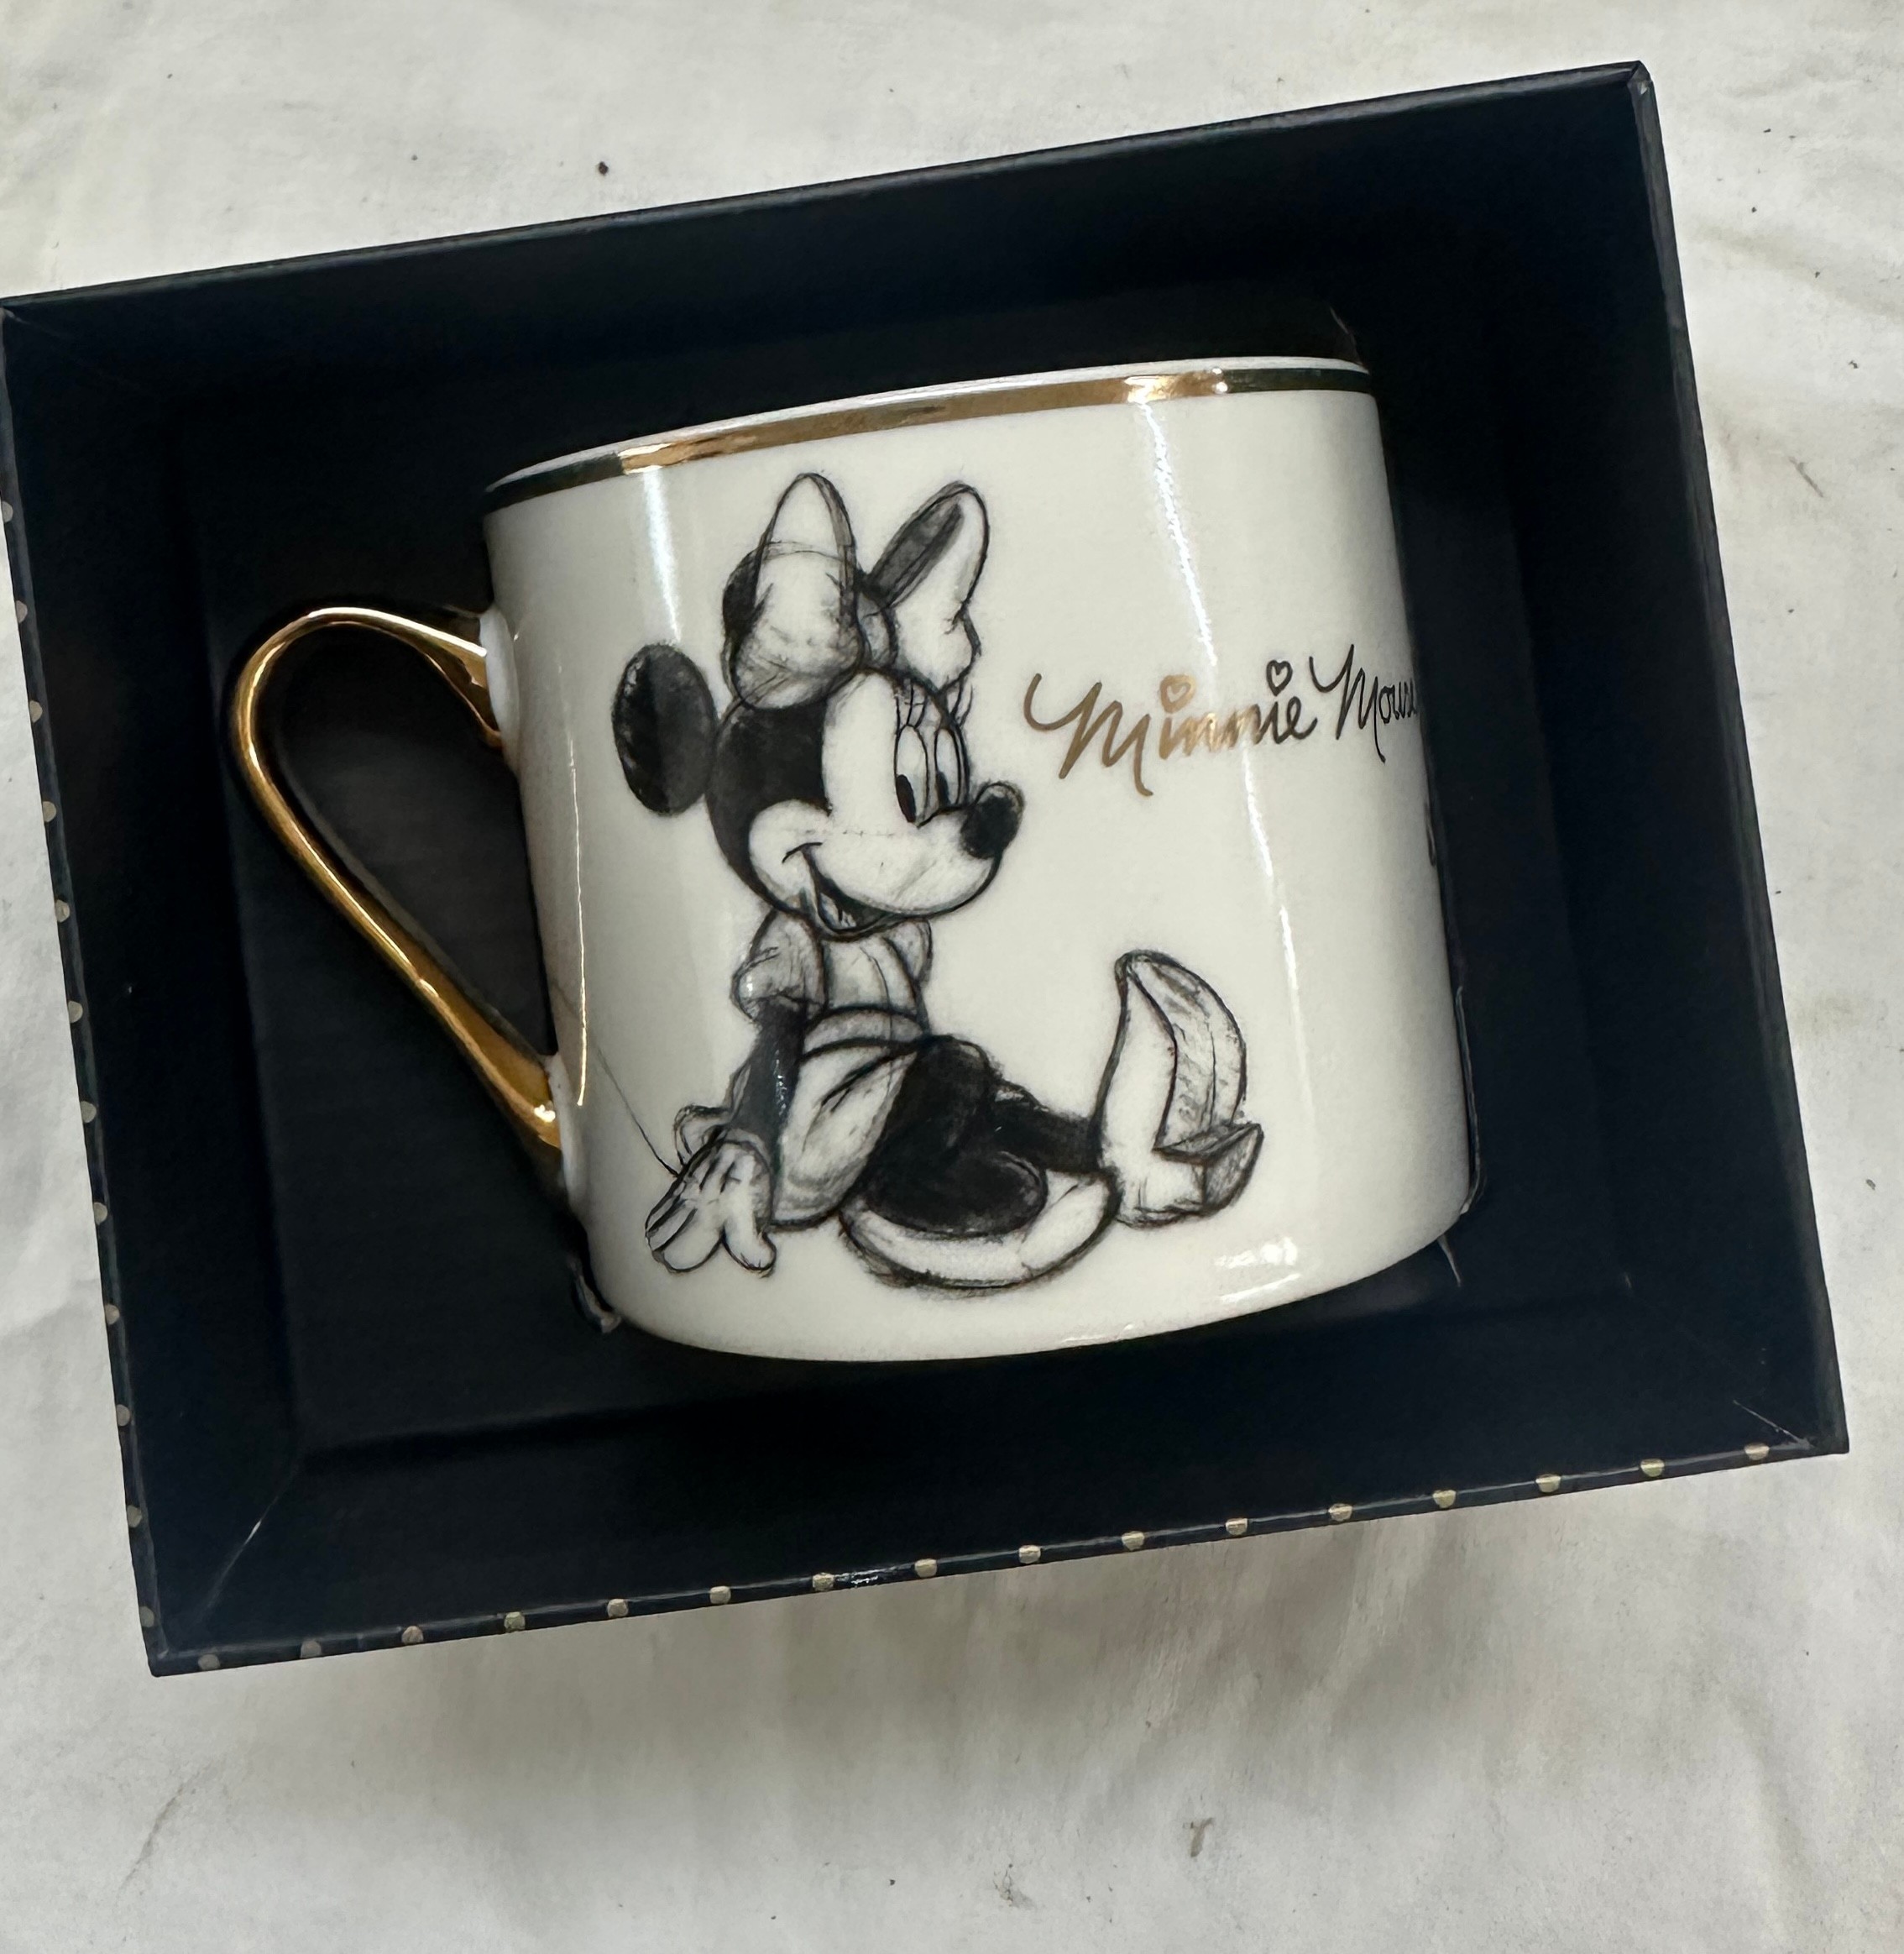 Spode Disney Christmas tree design bowl, Minnie Mouse mugs photo frames etc - Image 4 of 5